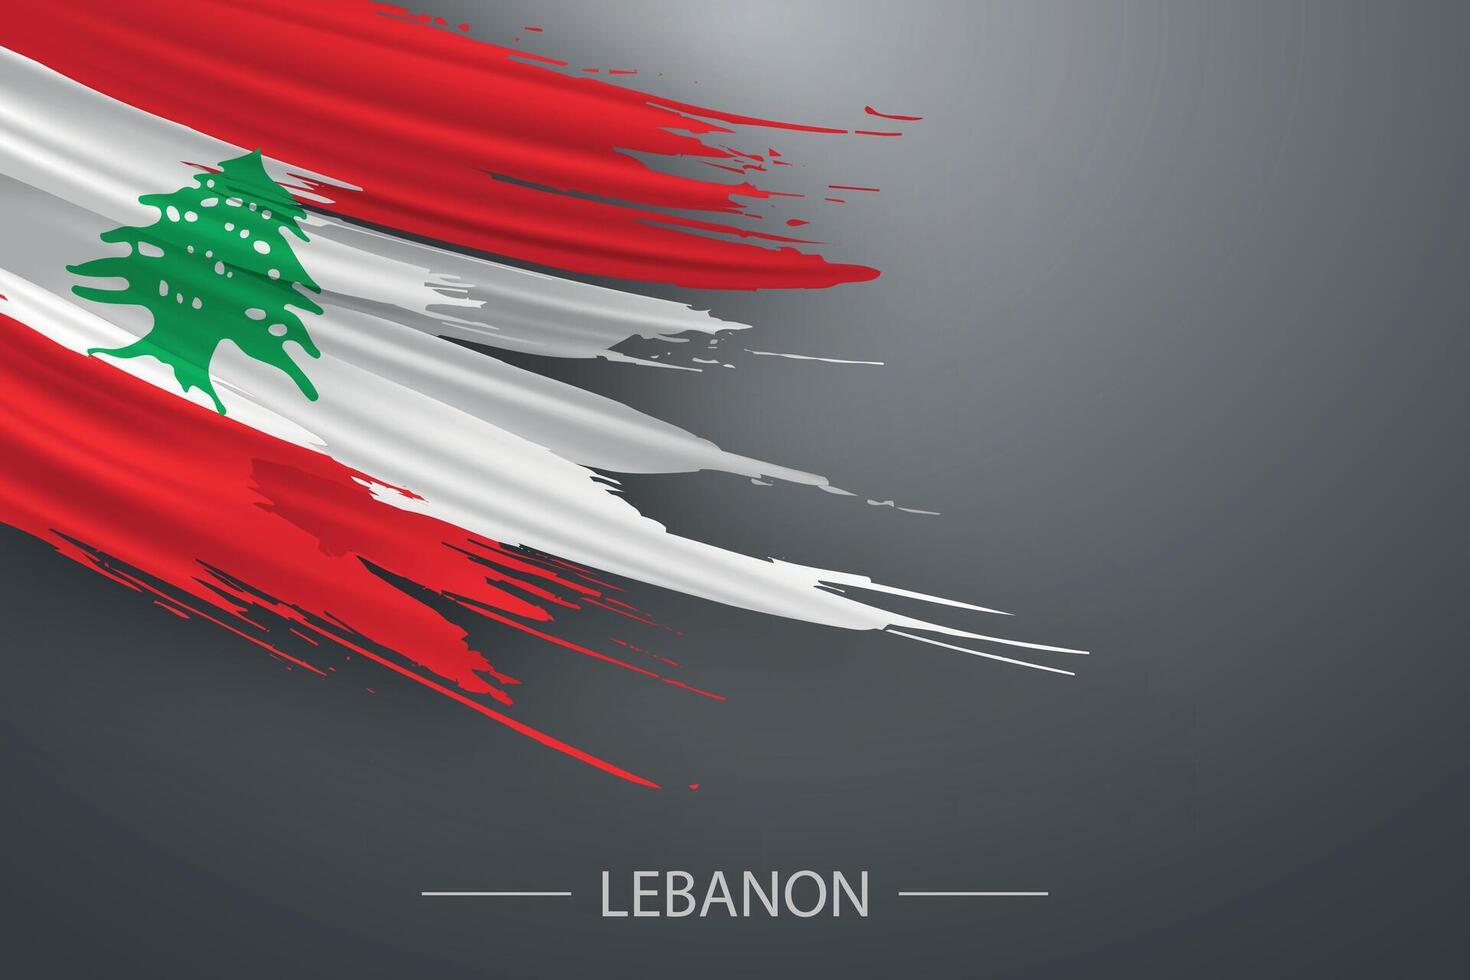 3d grunge brush stroke flag of Lebanon vector